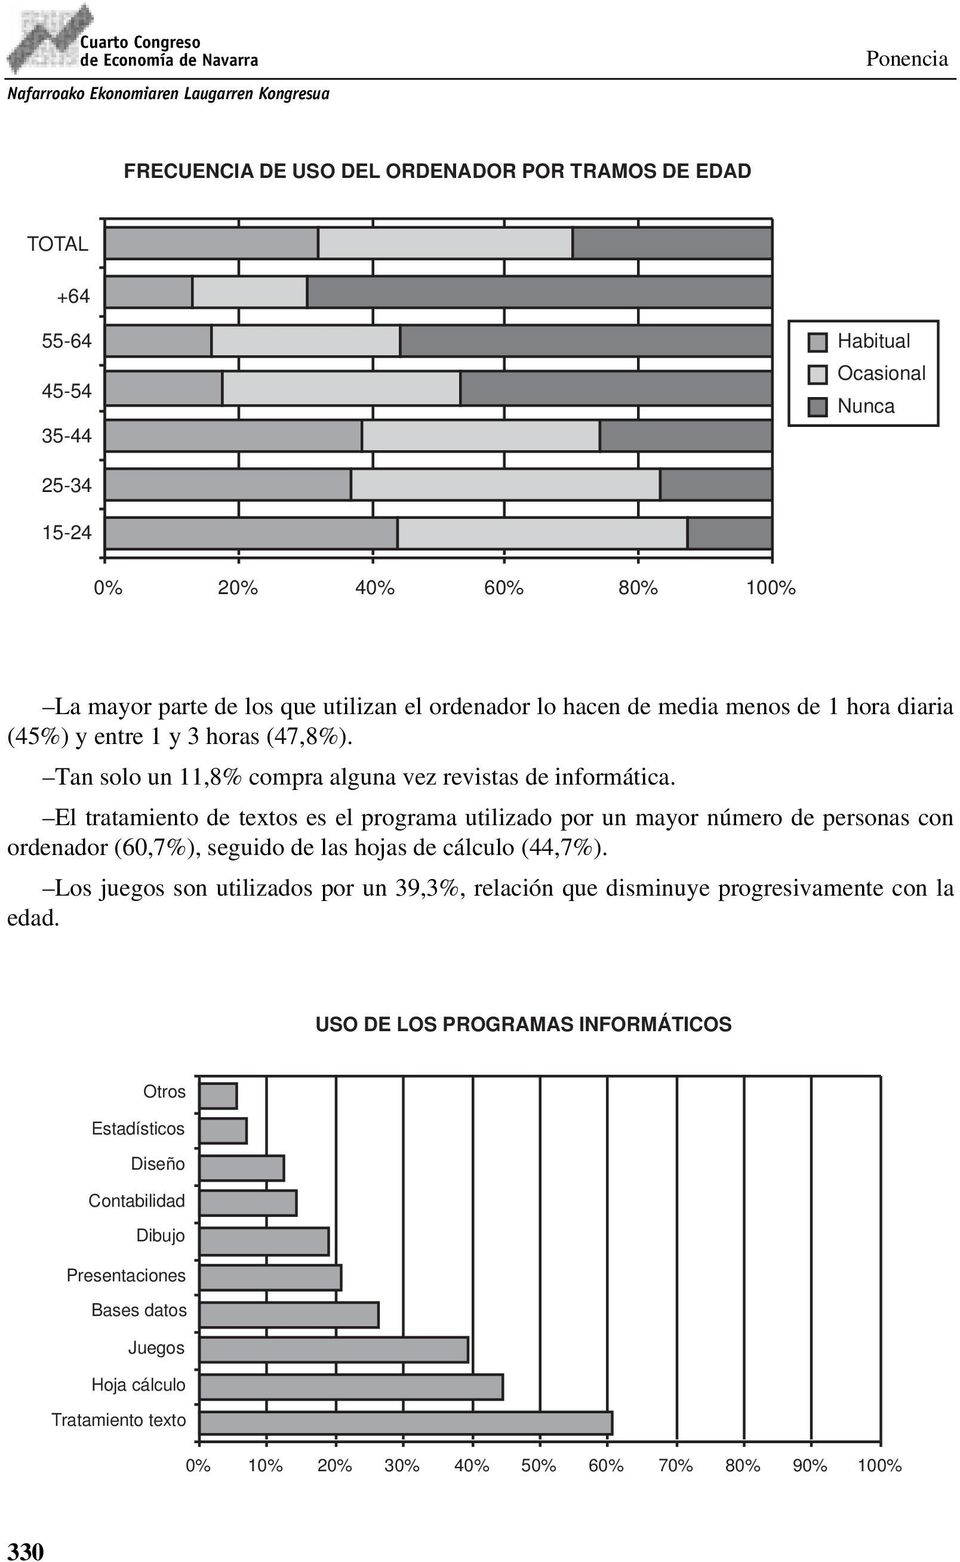 El tratamiento de textos es el programa utilizado por un mayor número de personas con ordenador (60,7%), seguido de las hojas de cálculo (44,7%).